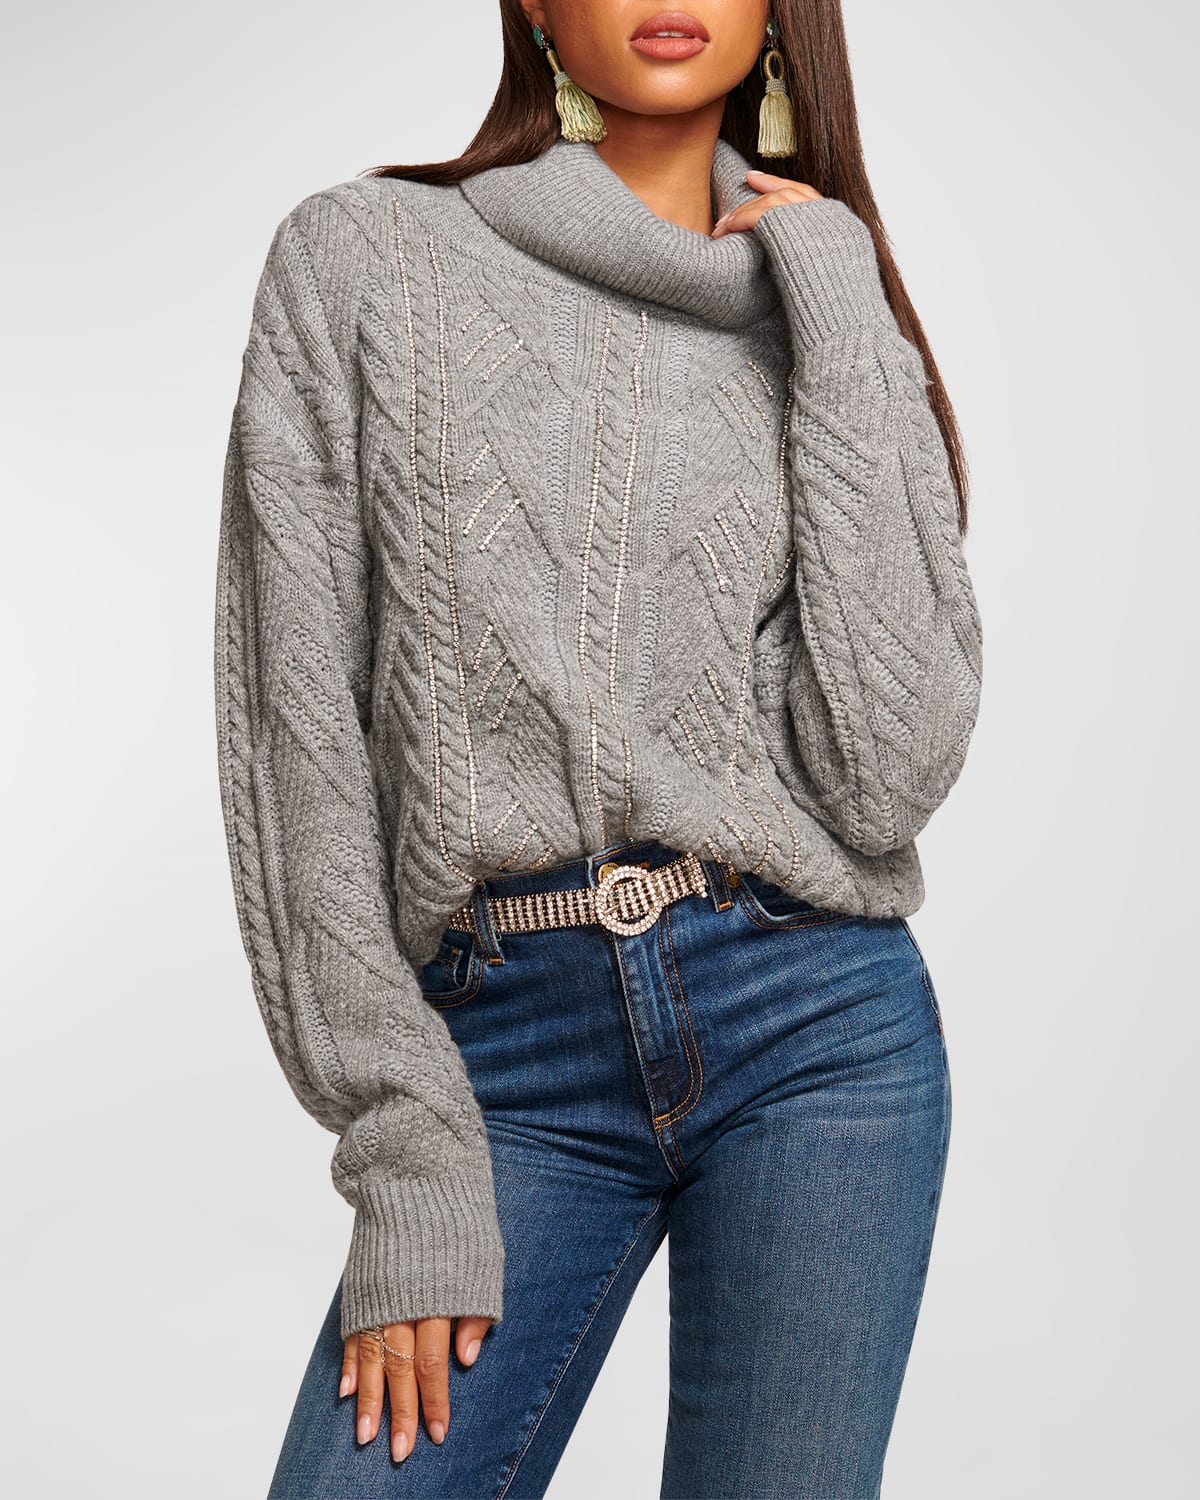 Annabelle Embellished Turtleneck Sweater